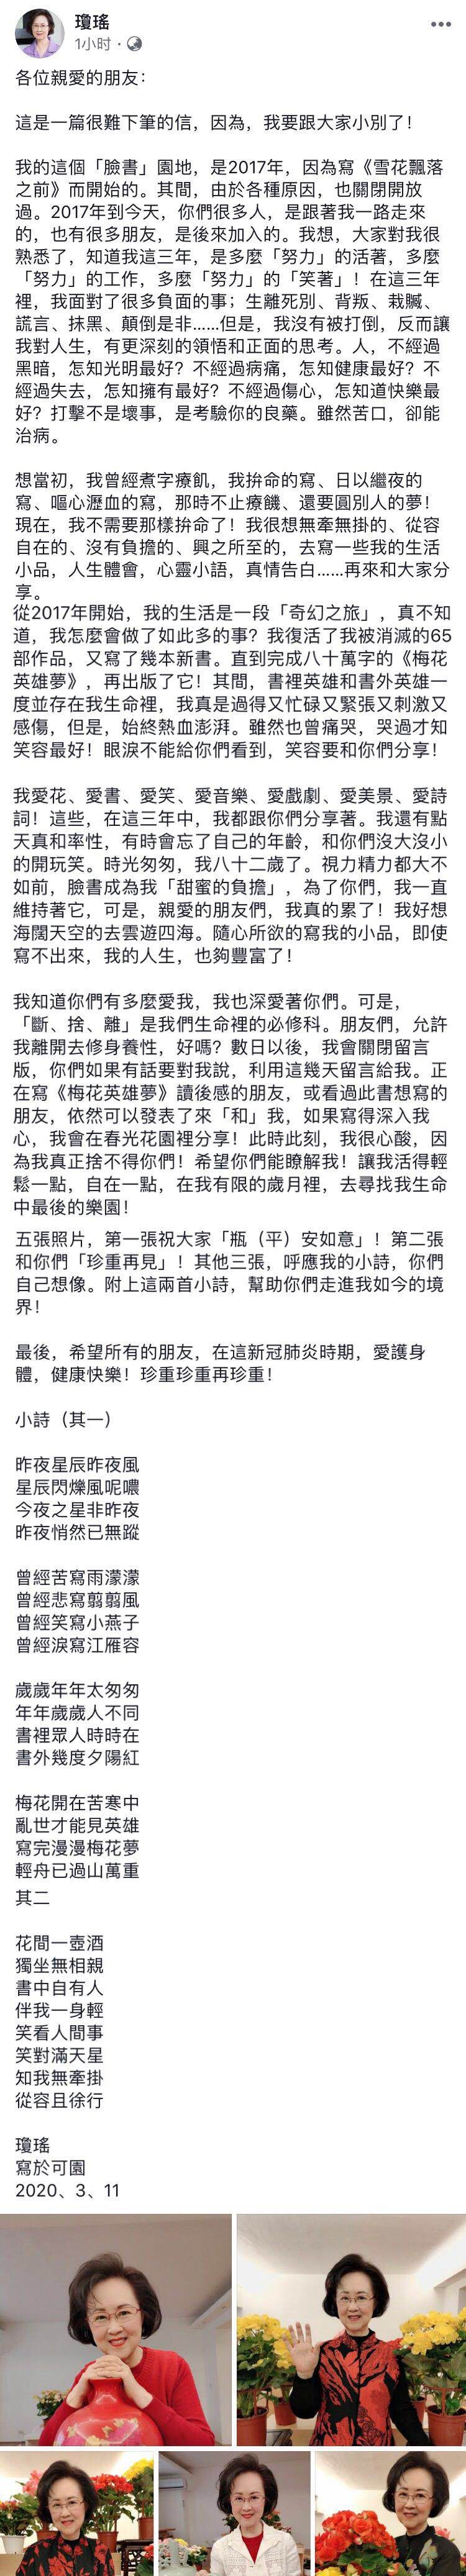 82岁琼瑶发长文“小别”，因精力有限将关闭社交媒体